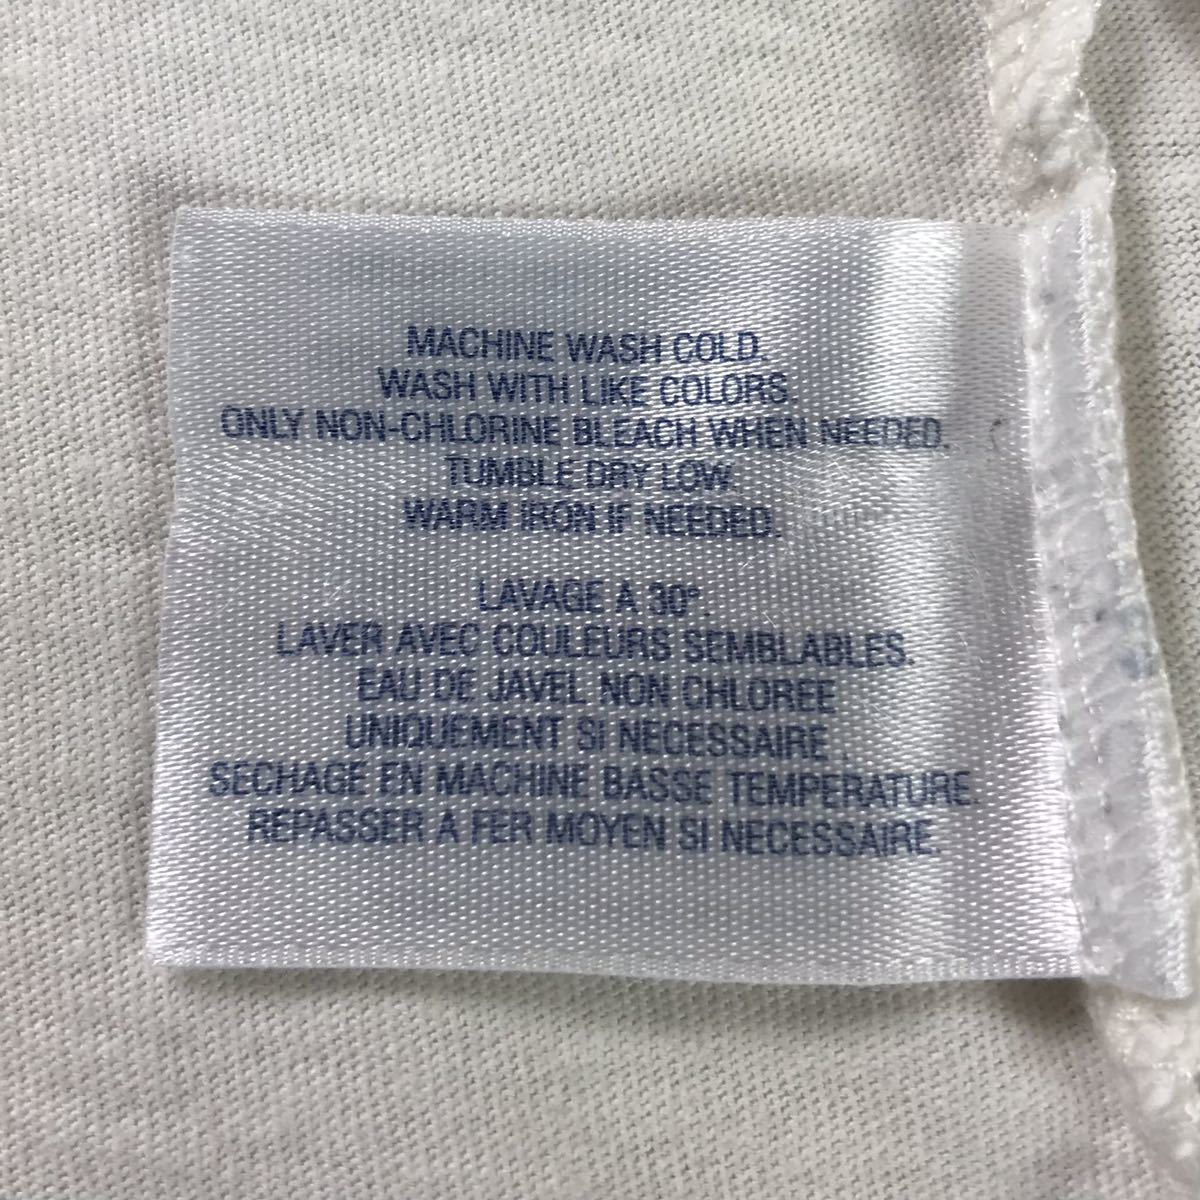 POLO BY RALPH LAUREN ポロ バイ ラルフローレン 半袖Tシャツ S(8) ホワイト×ネイビー ビッグポニー 刺繍ロゴ ユースサイズ_画像6